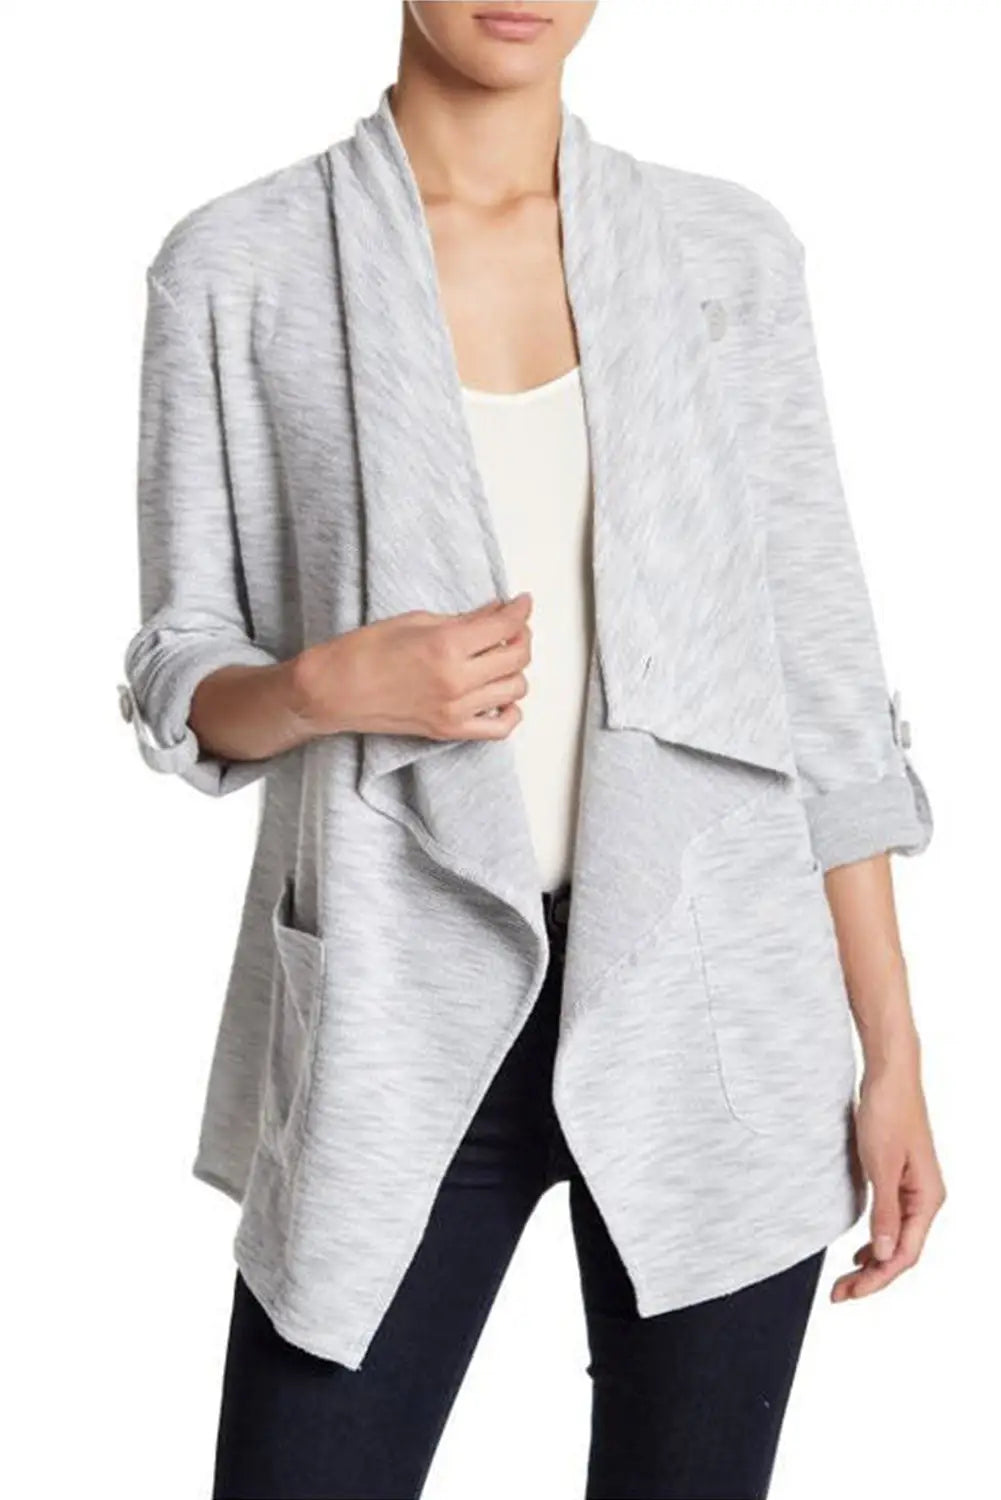 Gray drape front knit jacket - jackets